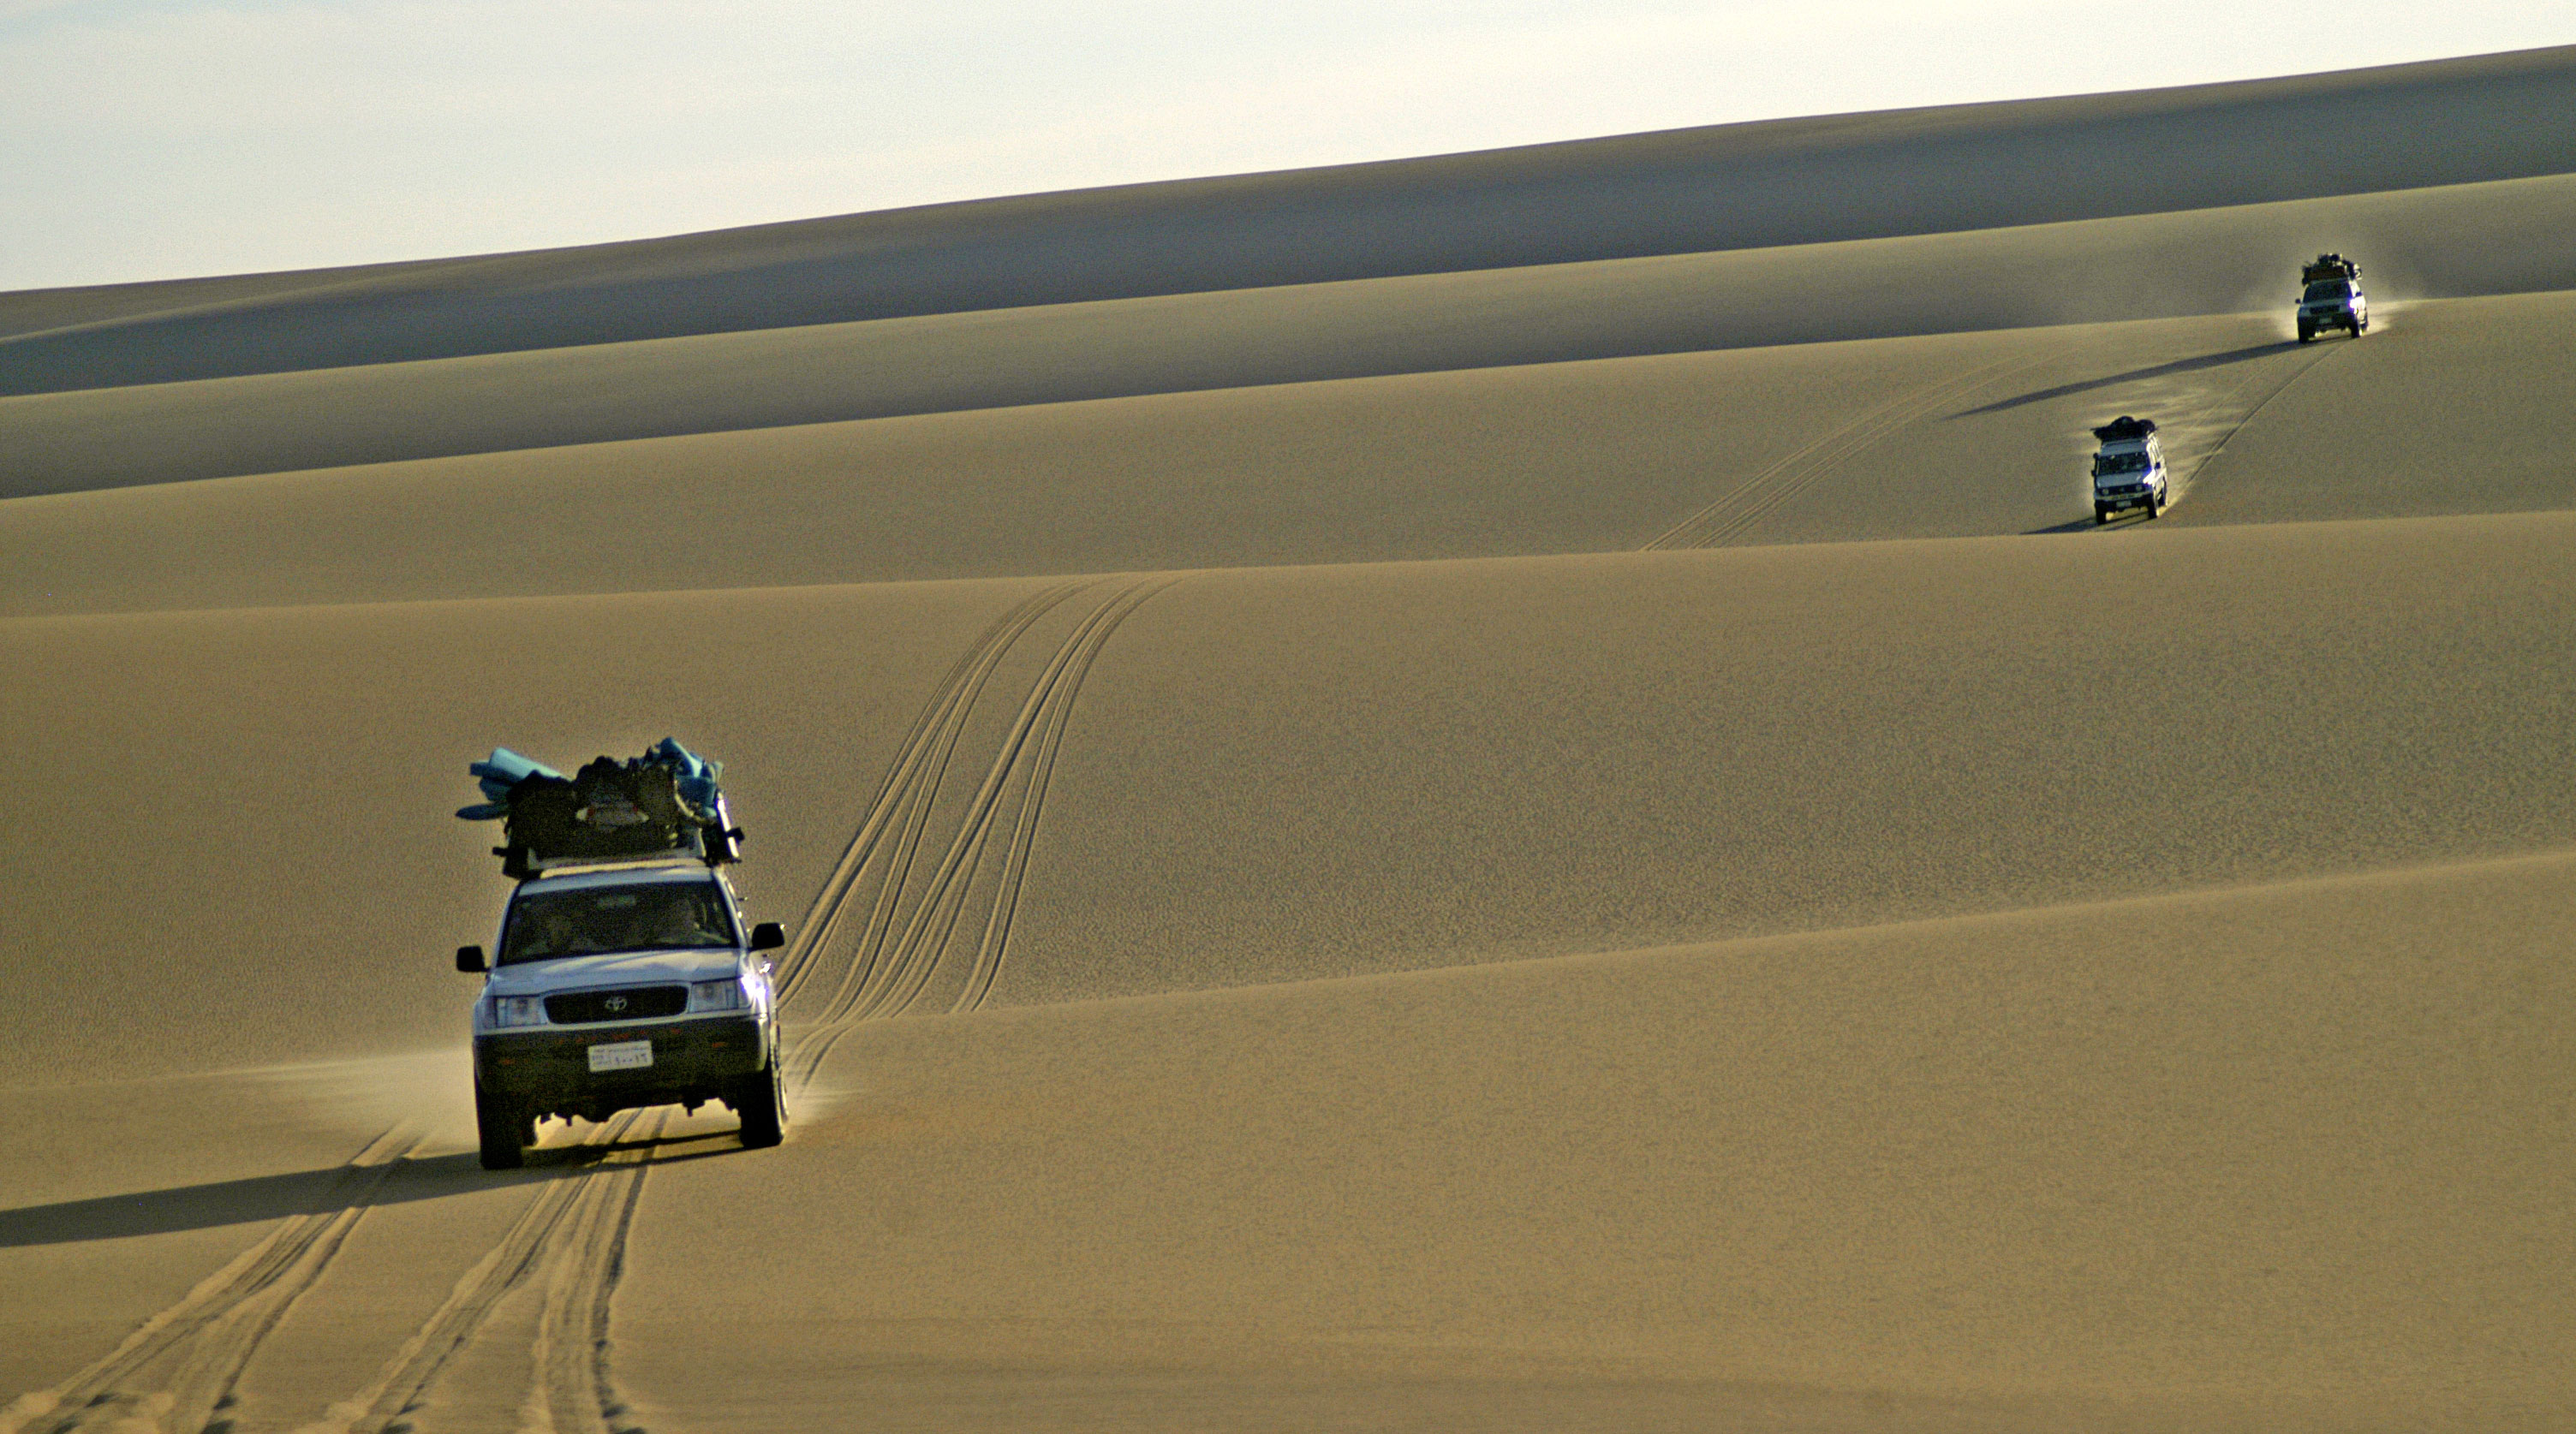 Jeep tours in the Sinai desert, Egypt